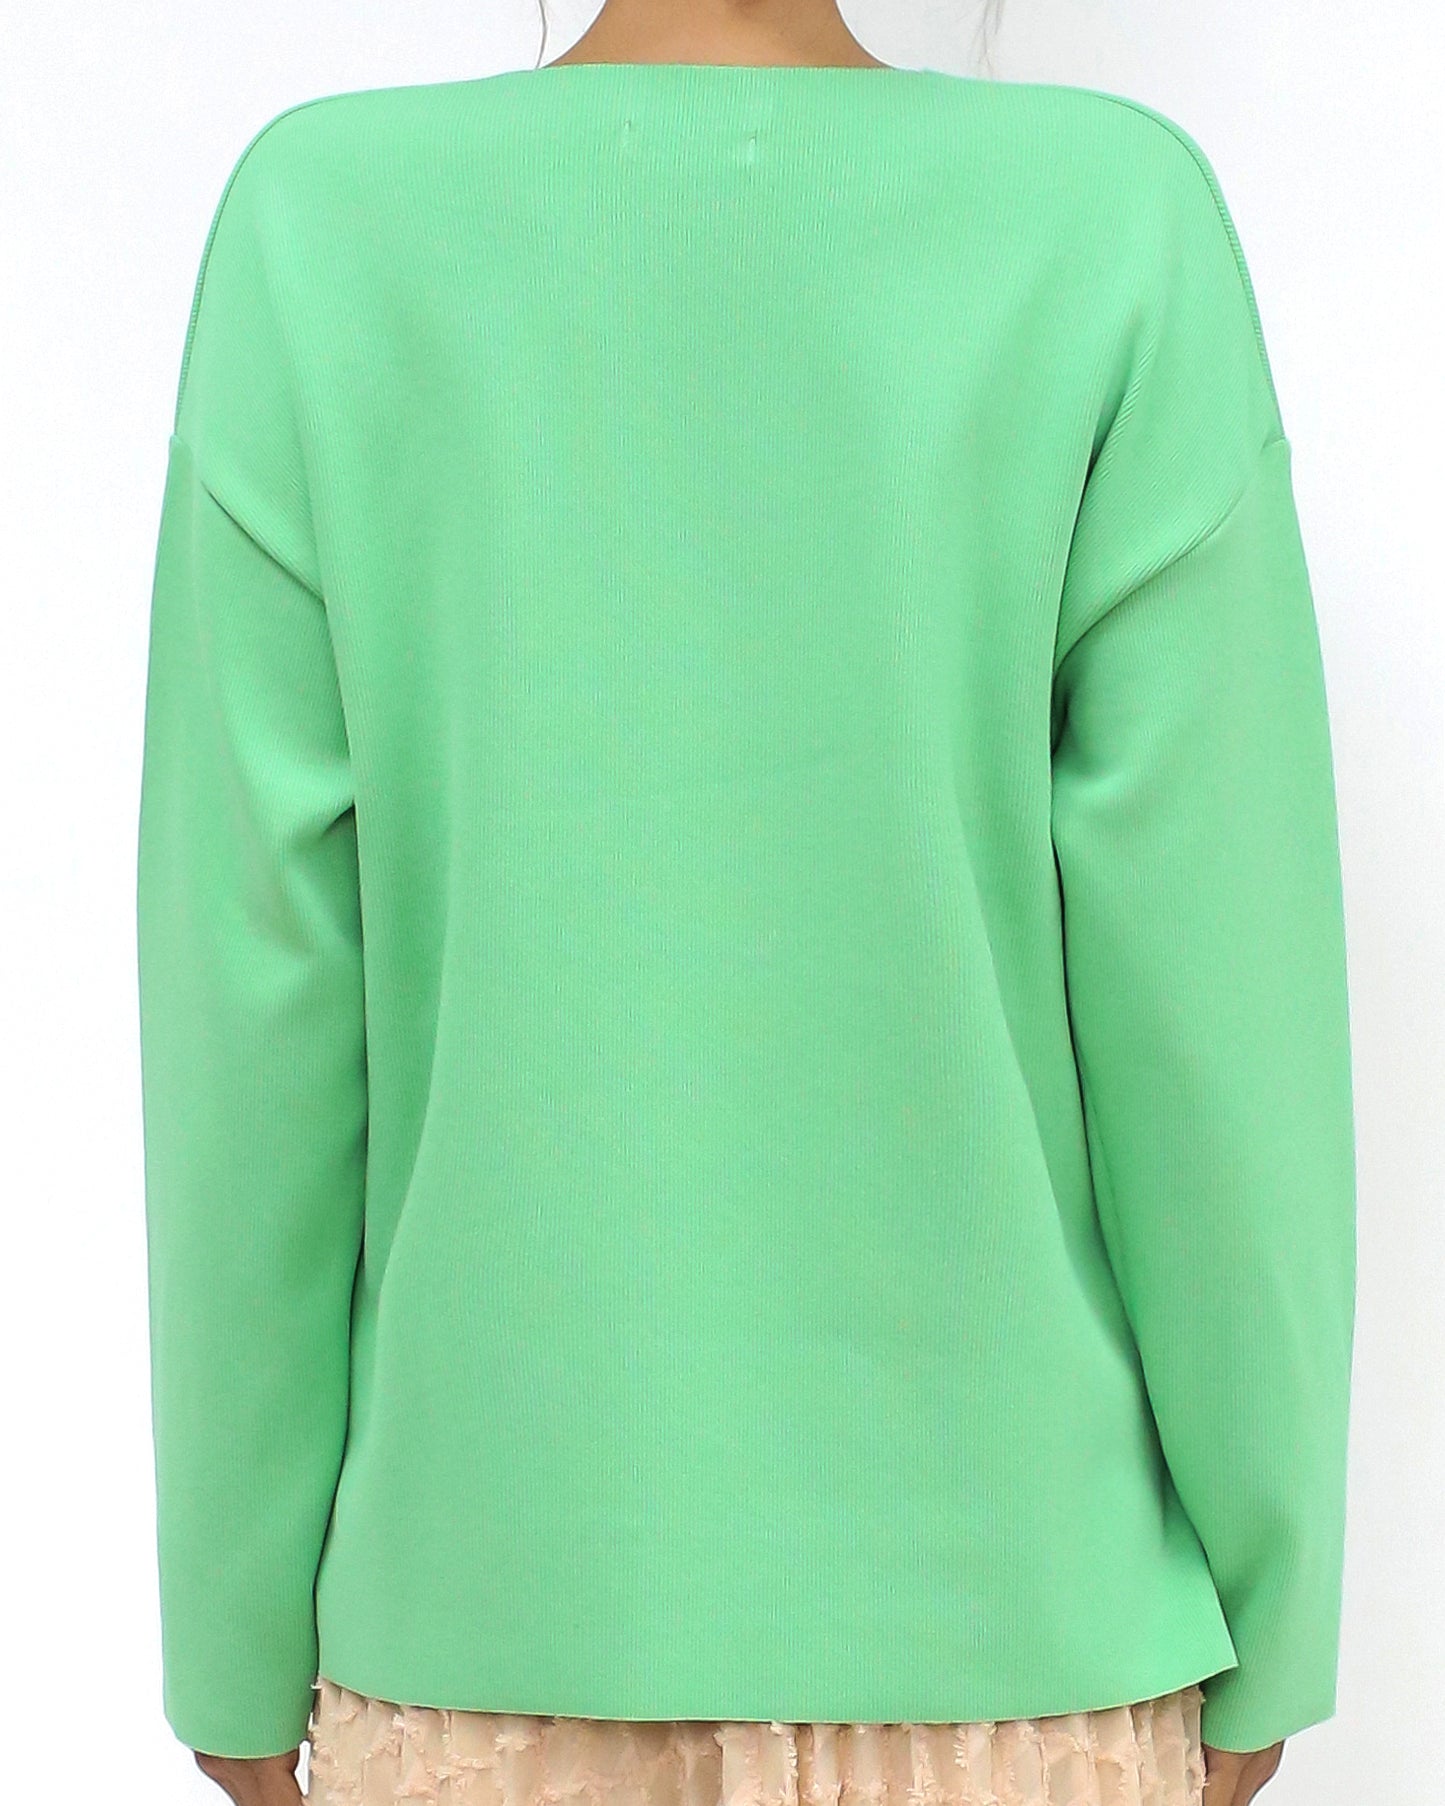 green basic V neck knitted top